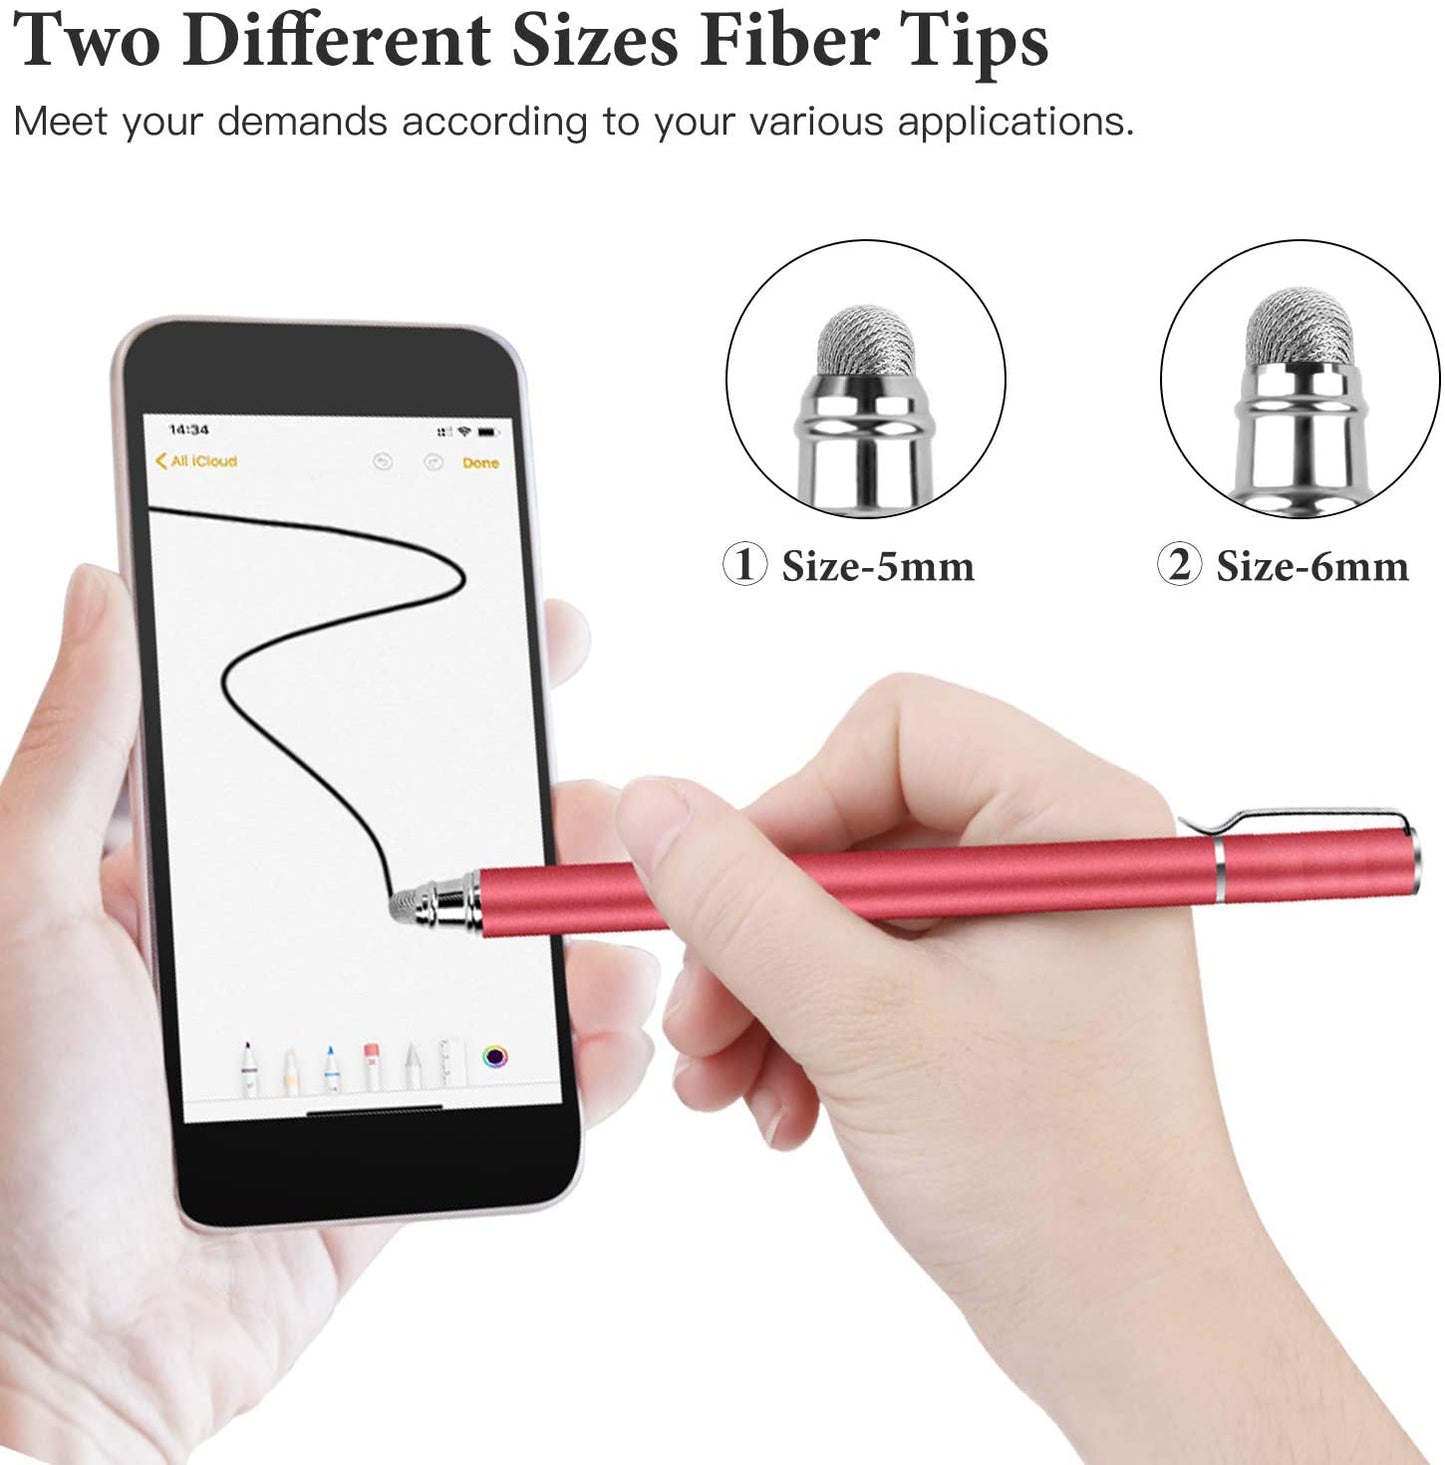 Red Stylus, Lightweight Aluminum Fiber Tip Touch Screen Pen - NWZ57